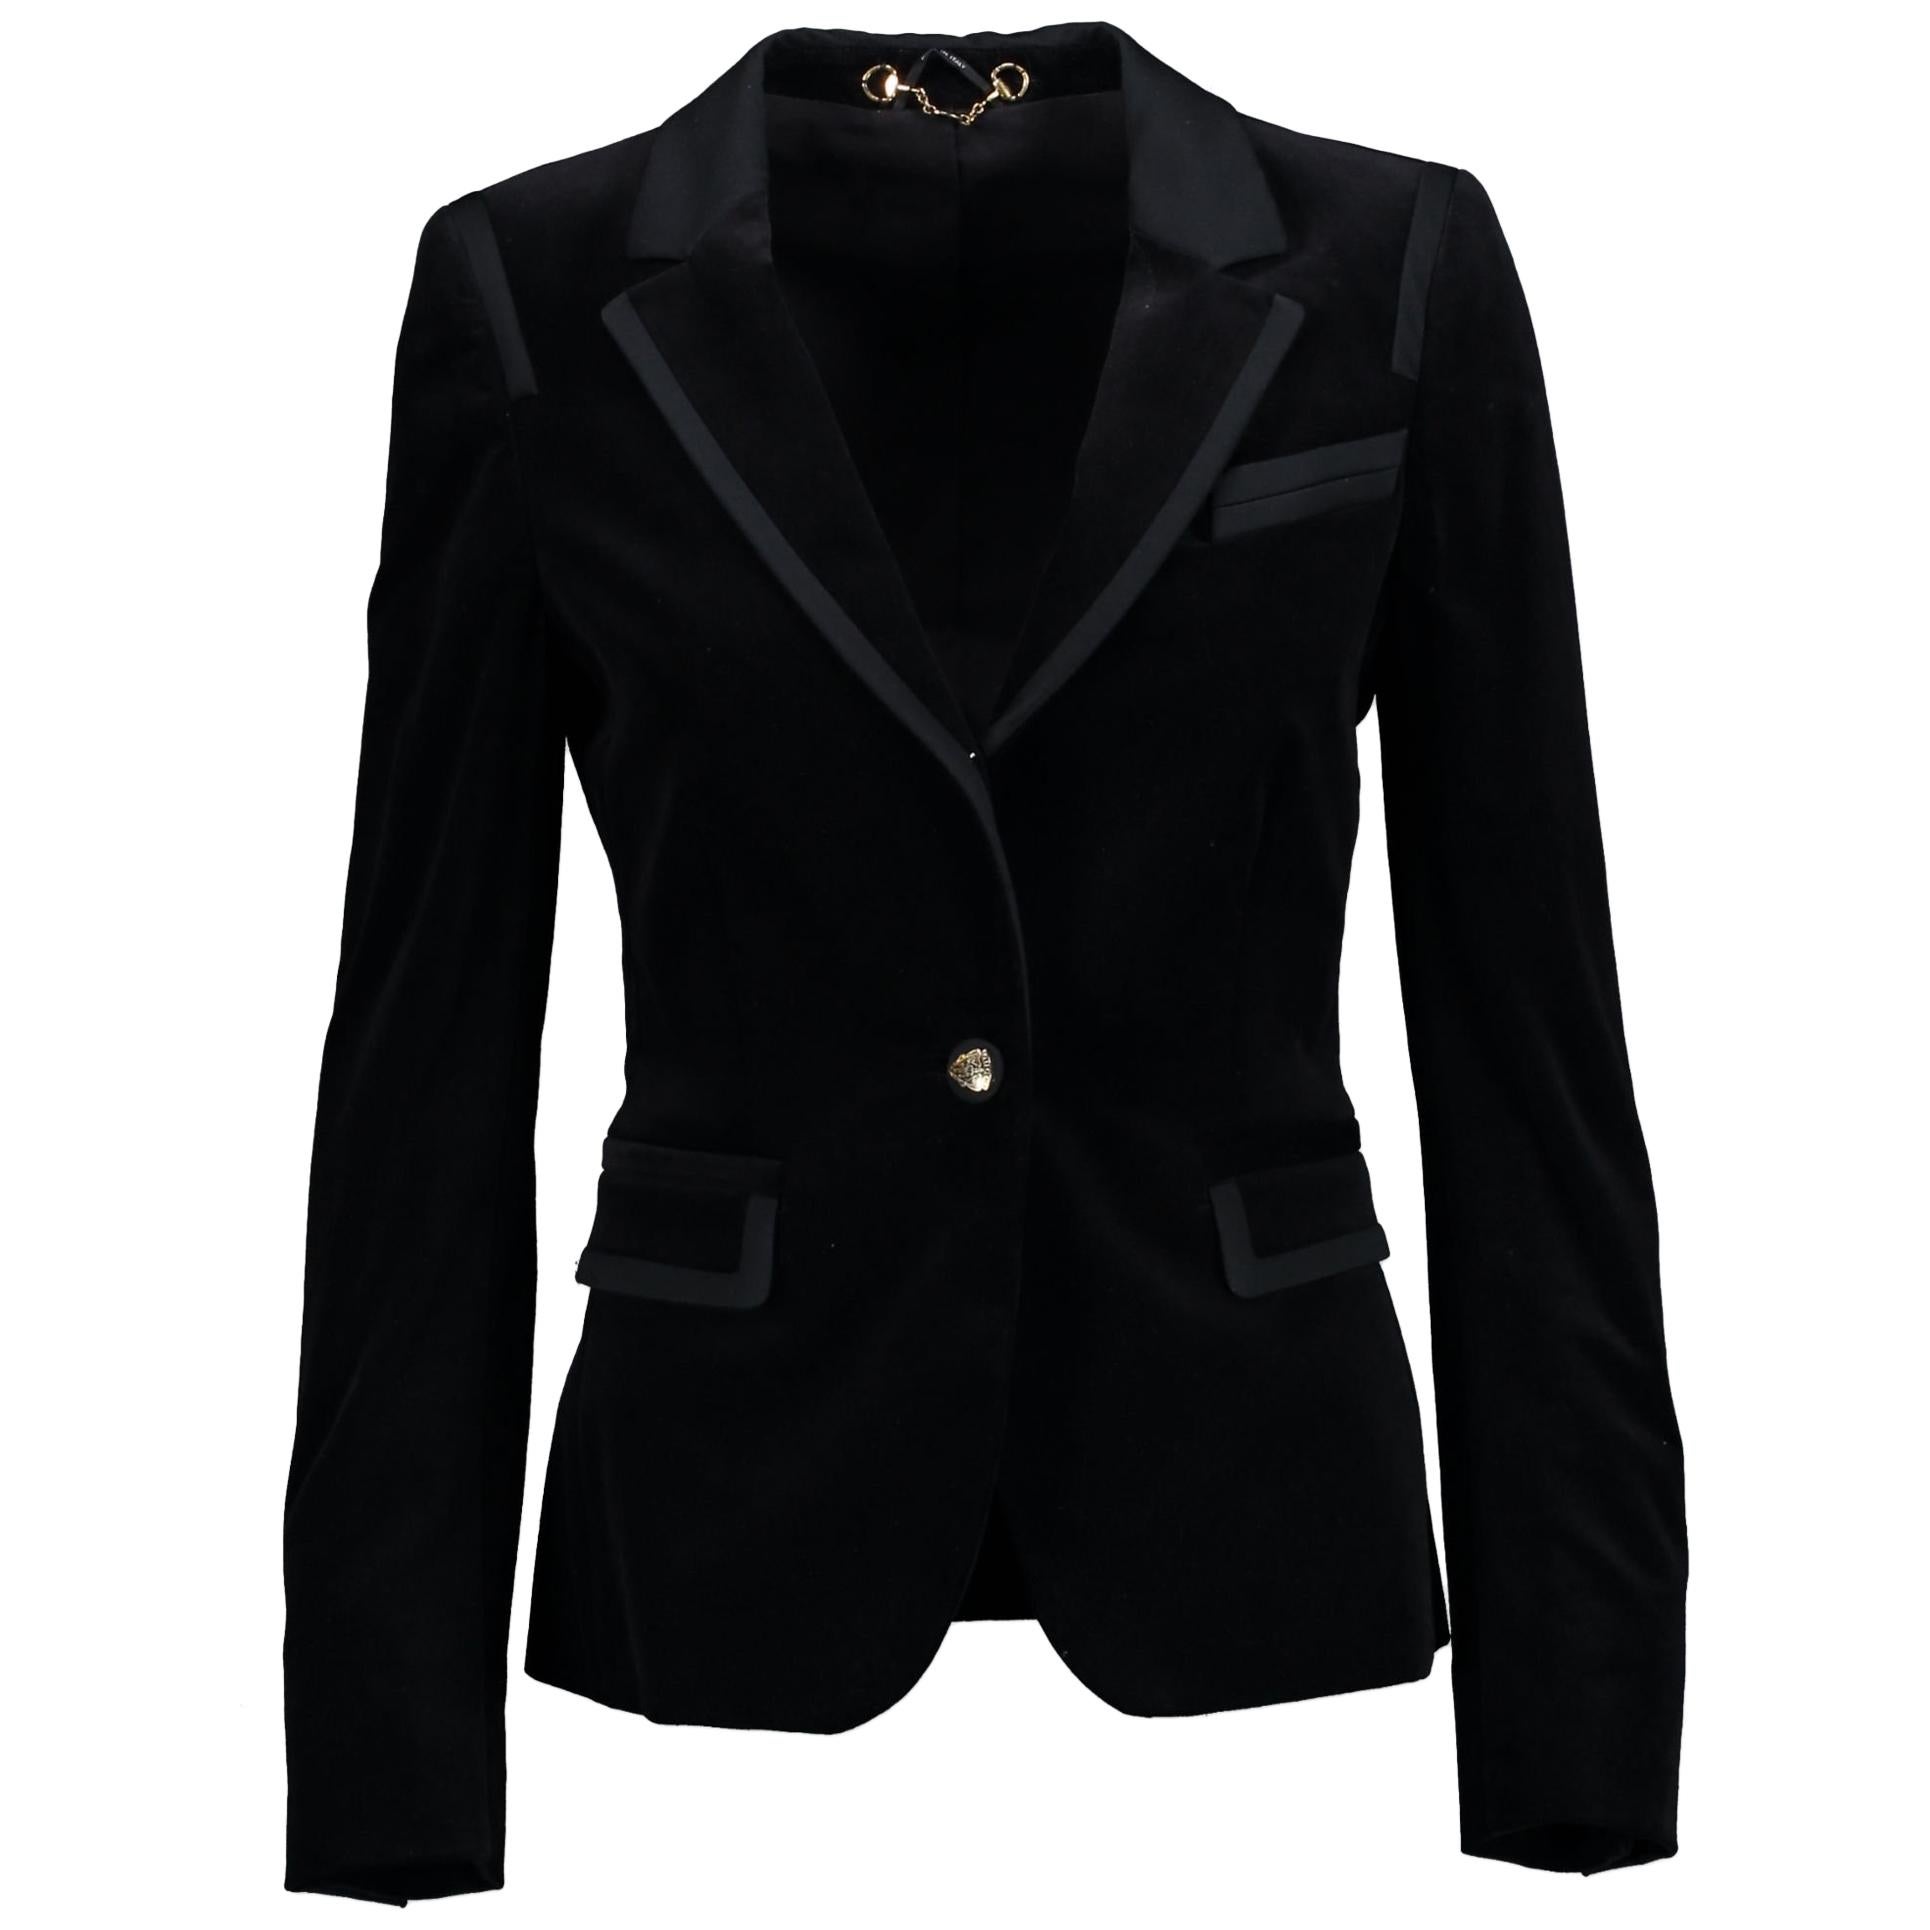 Gucci black velvet suit - Size 38